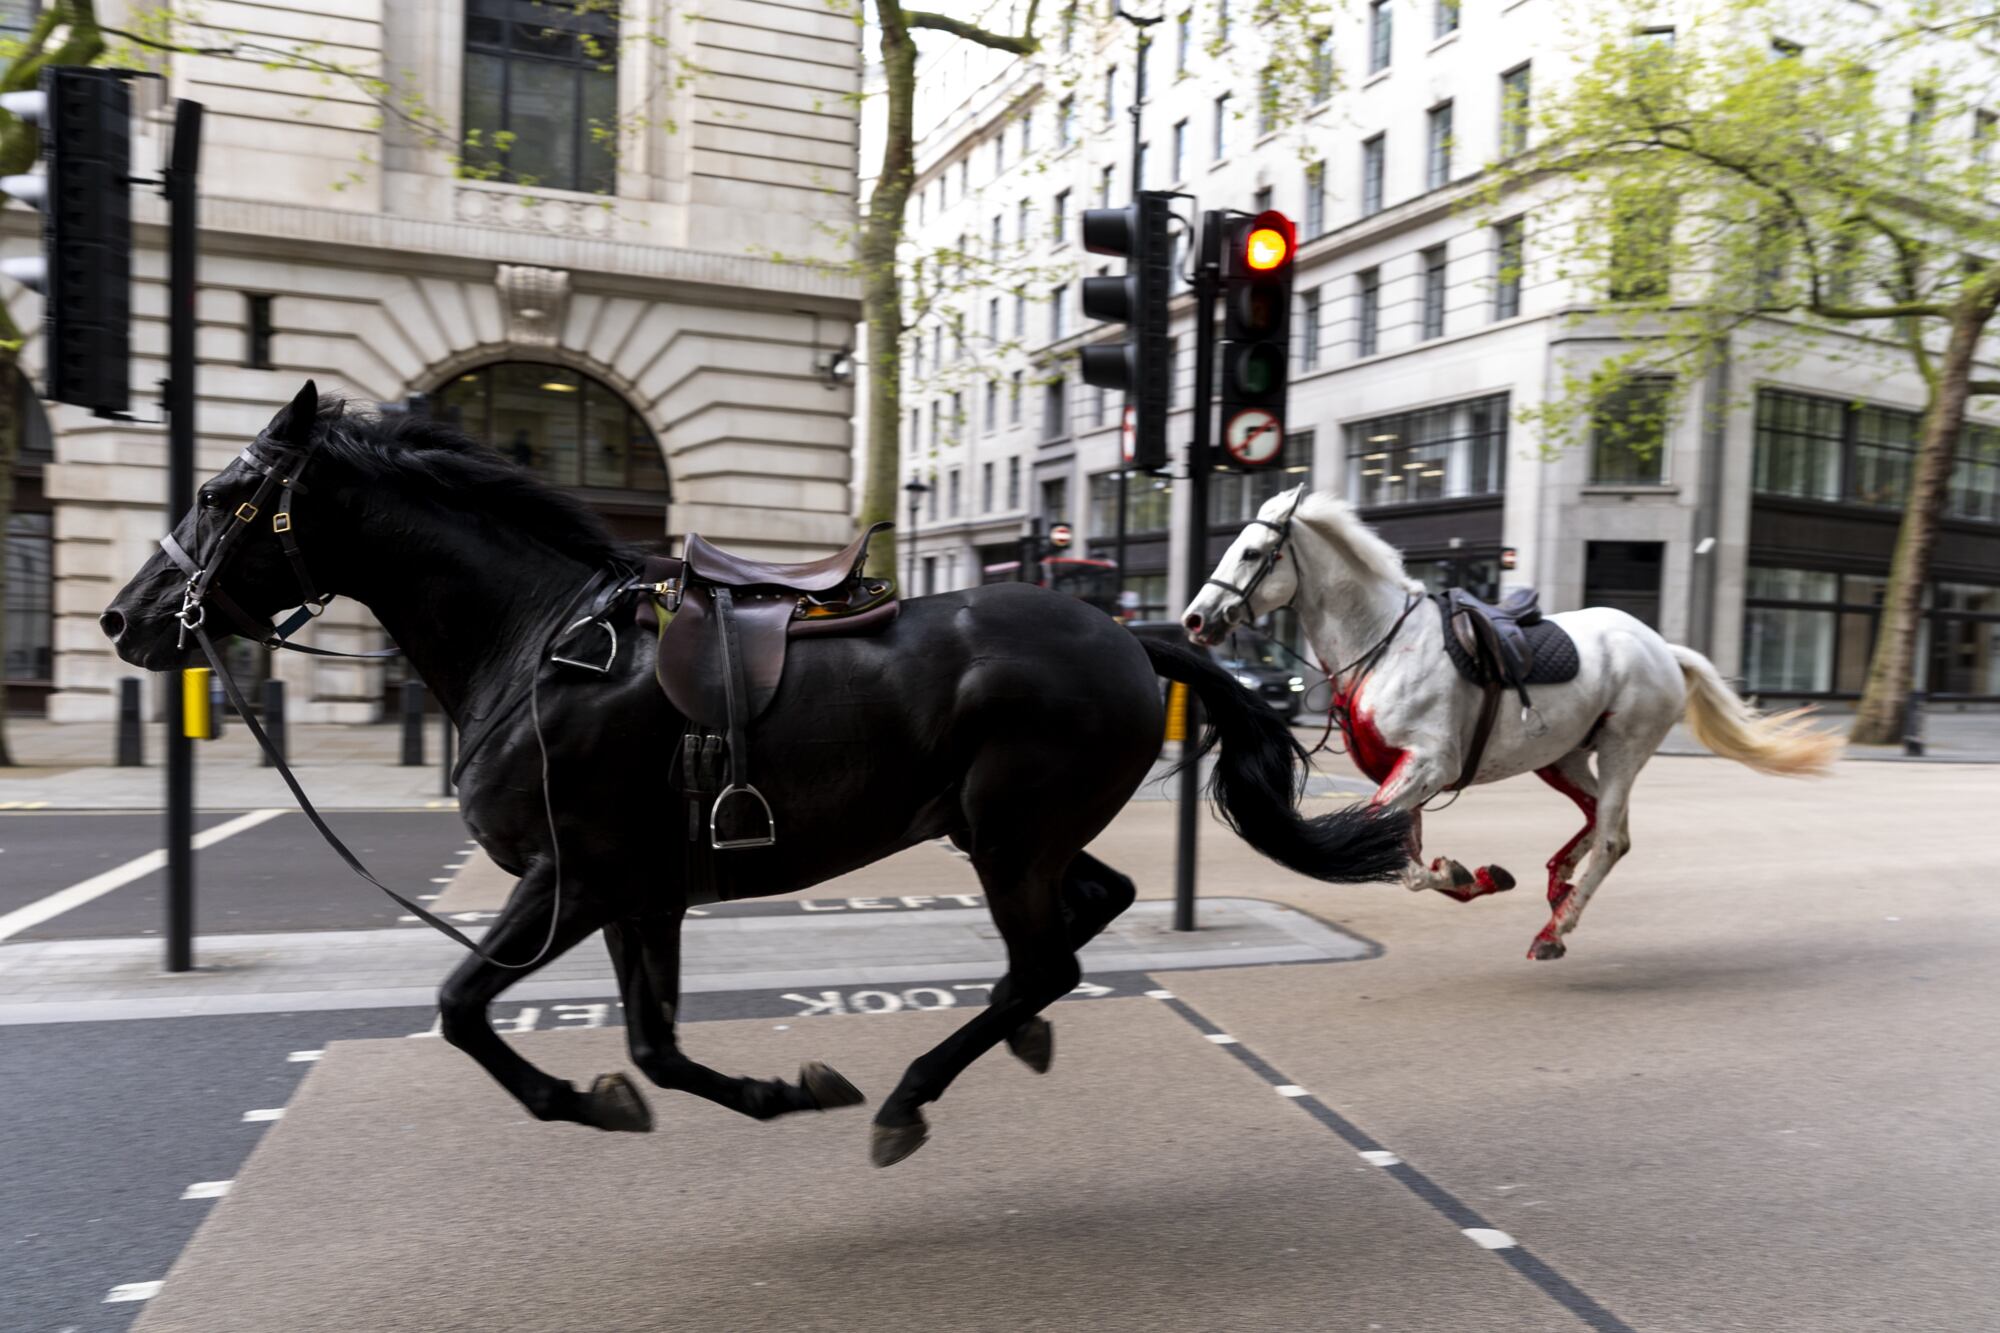 Sorpresa en Londres: caballos del Ejército galoparon fuera de control por las calles, chocaron contra autos e hirieron a 4 personas